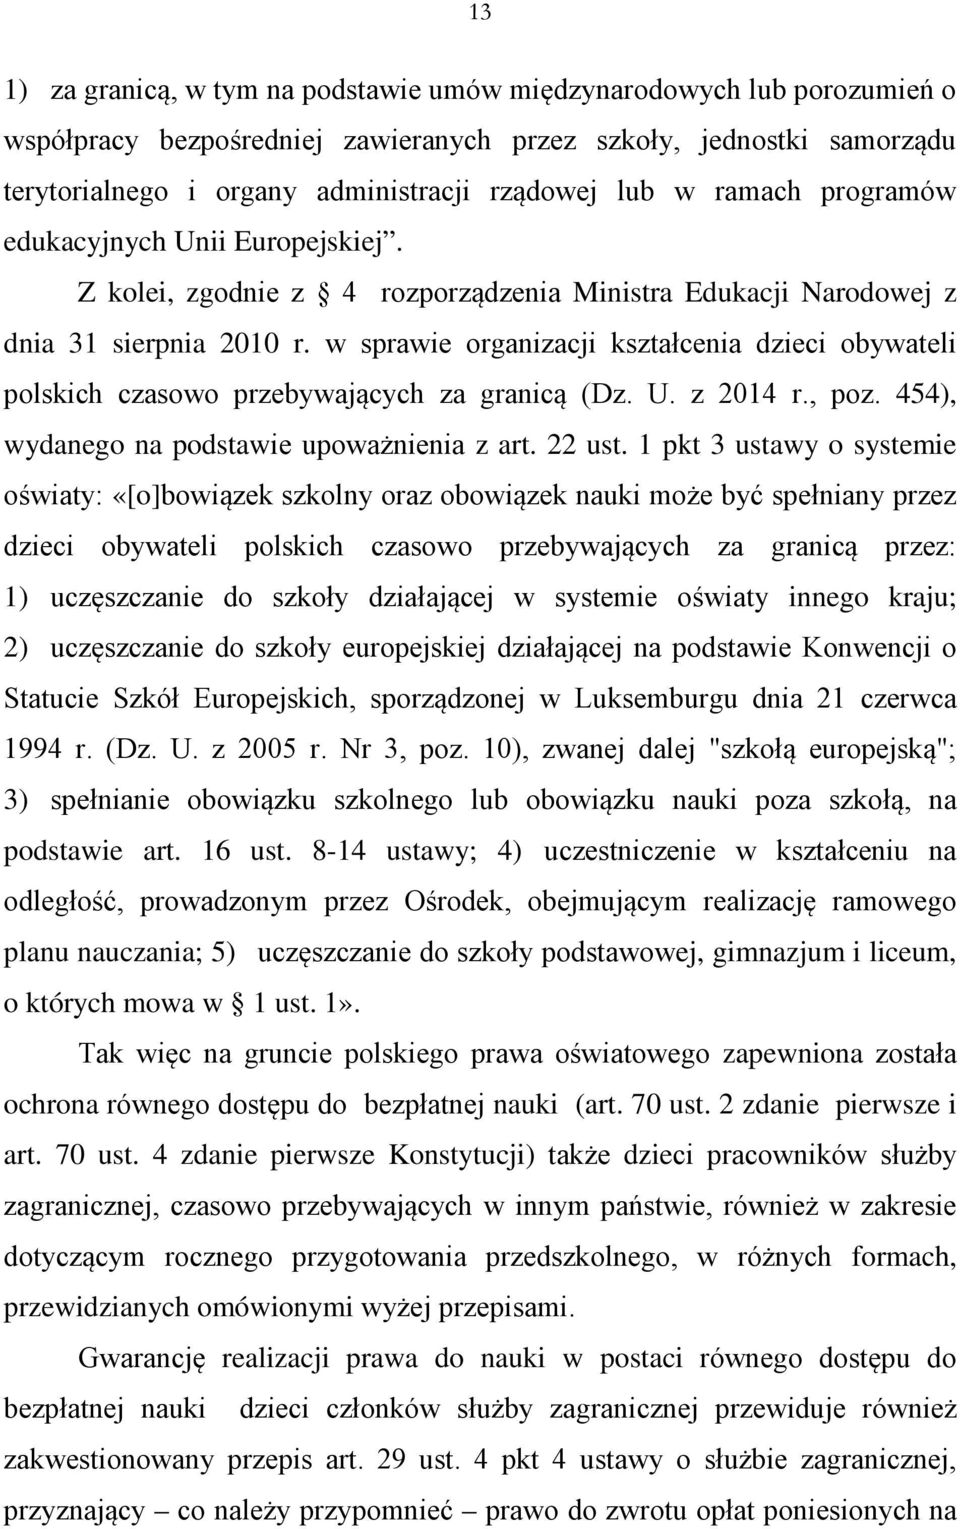 w sprawie organizacji kształcenia dzieci obywateli polskich czasowo przebywających za granicą (Dz. U. z 2014 r., poz. 454), wydanego na podstawie upoważnienia z art. 22 ust.